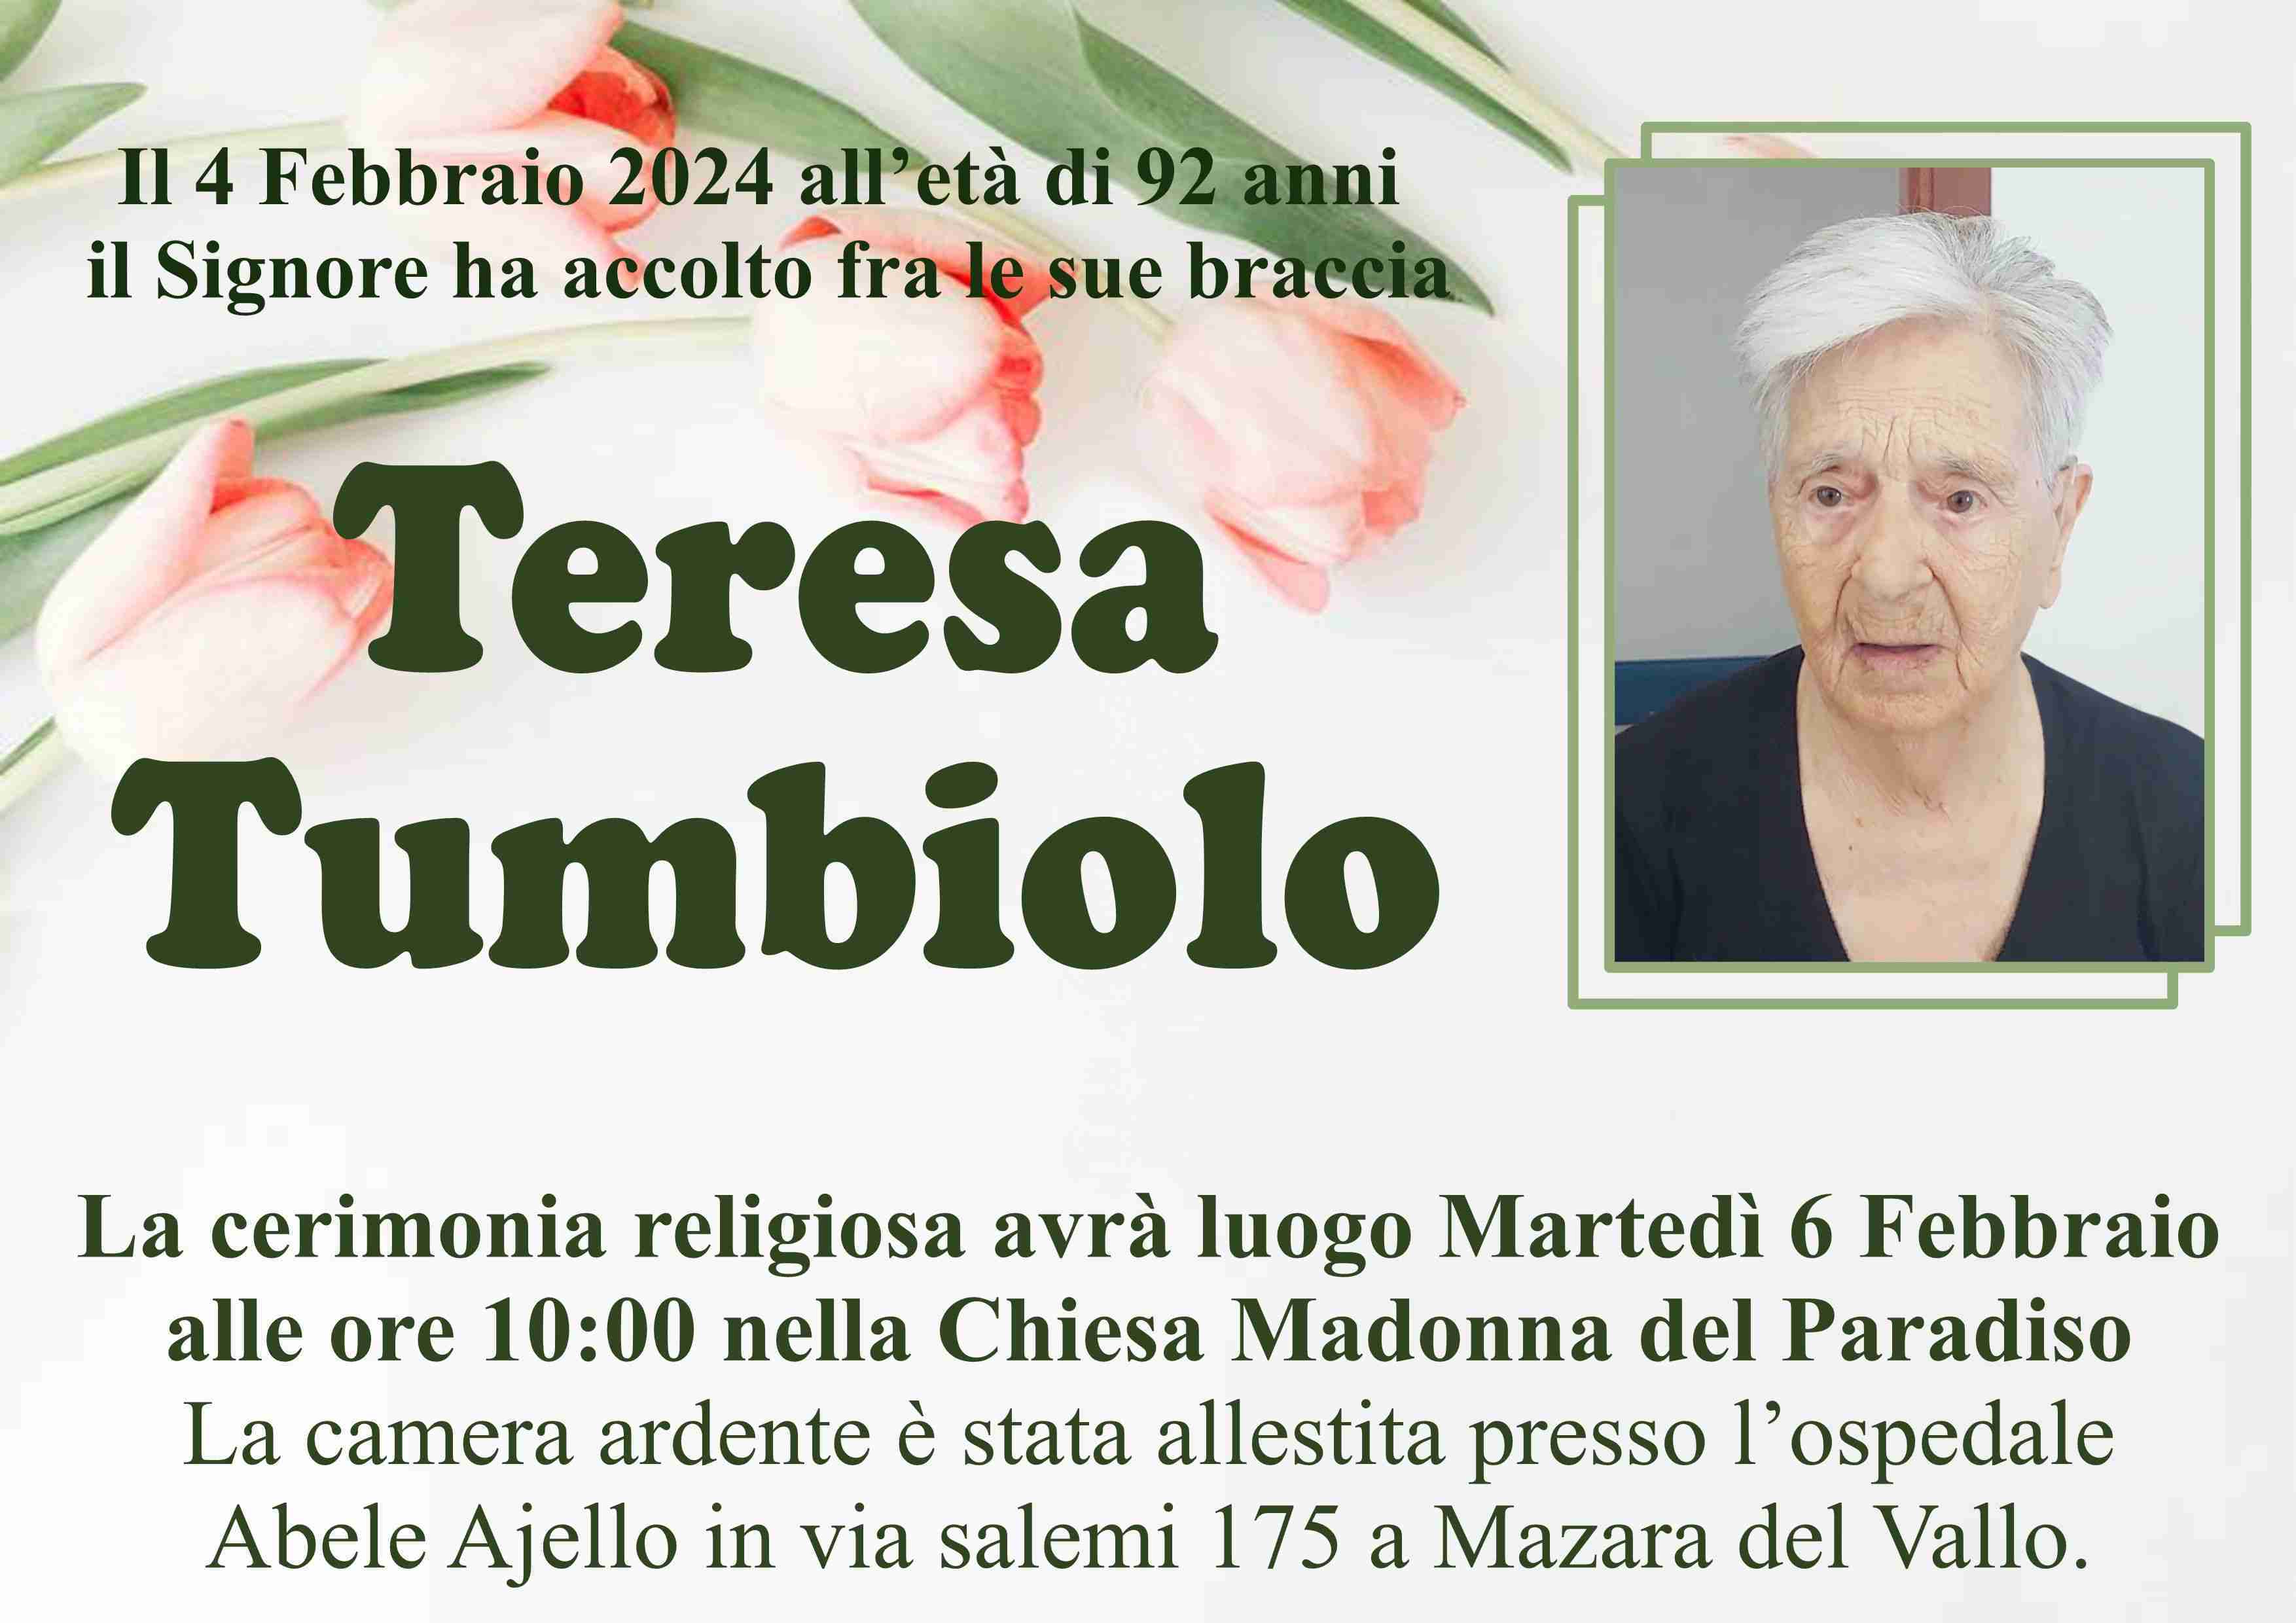 Teresa Tumbiolo